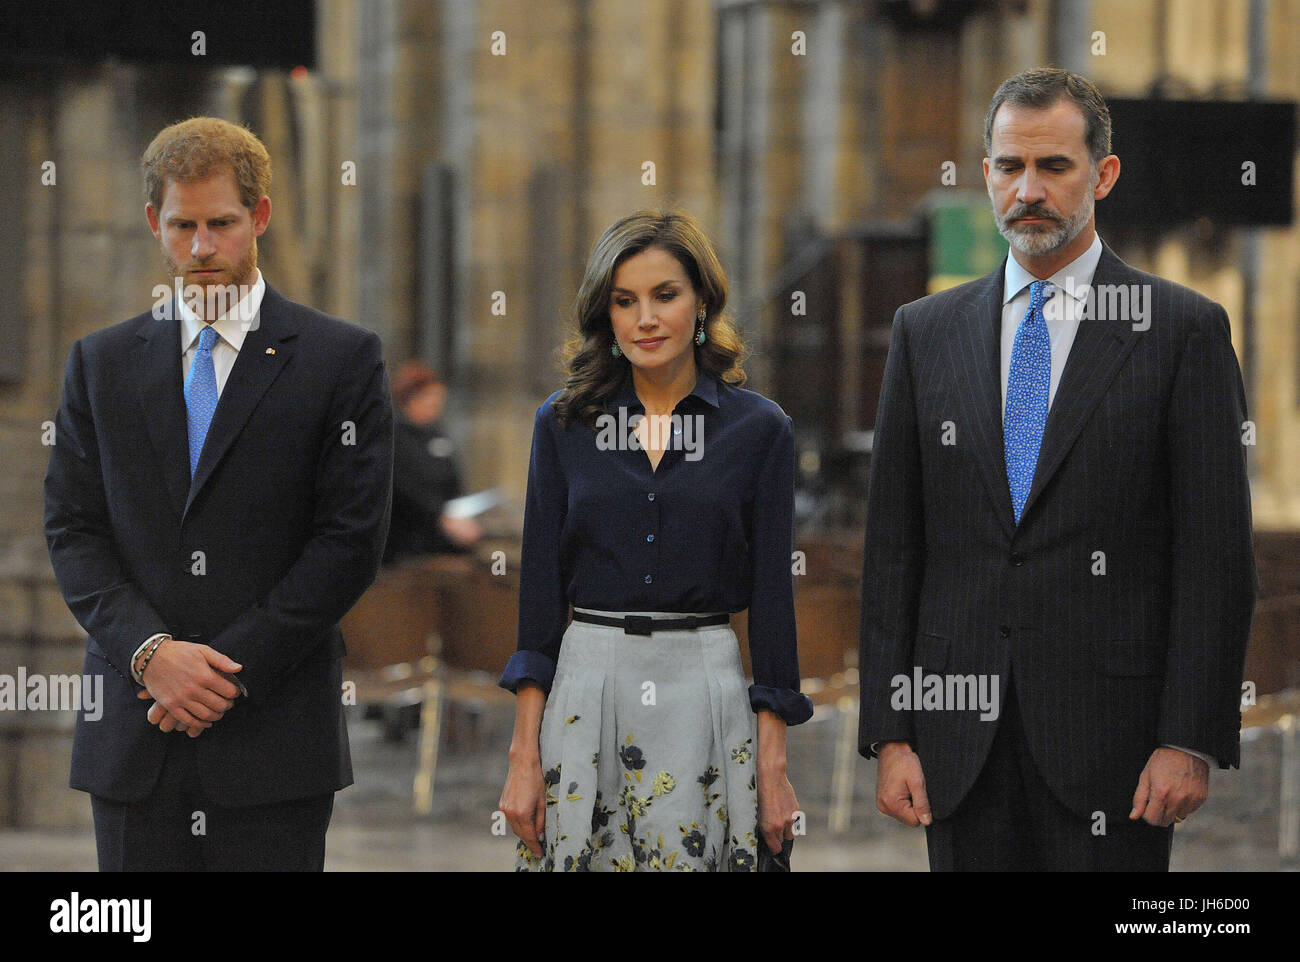 Il principe Harry (sinistra) stand con il re Filippo VI e la Regina Letizia di Spagna, presso la tomba del Milite Ignoto, come essi arrivano a Westminster Abbey a Londra durante il Re della visita di Stato nel Regno Unito. Foto Stock